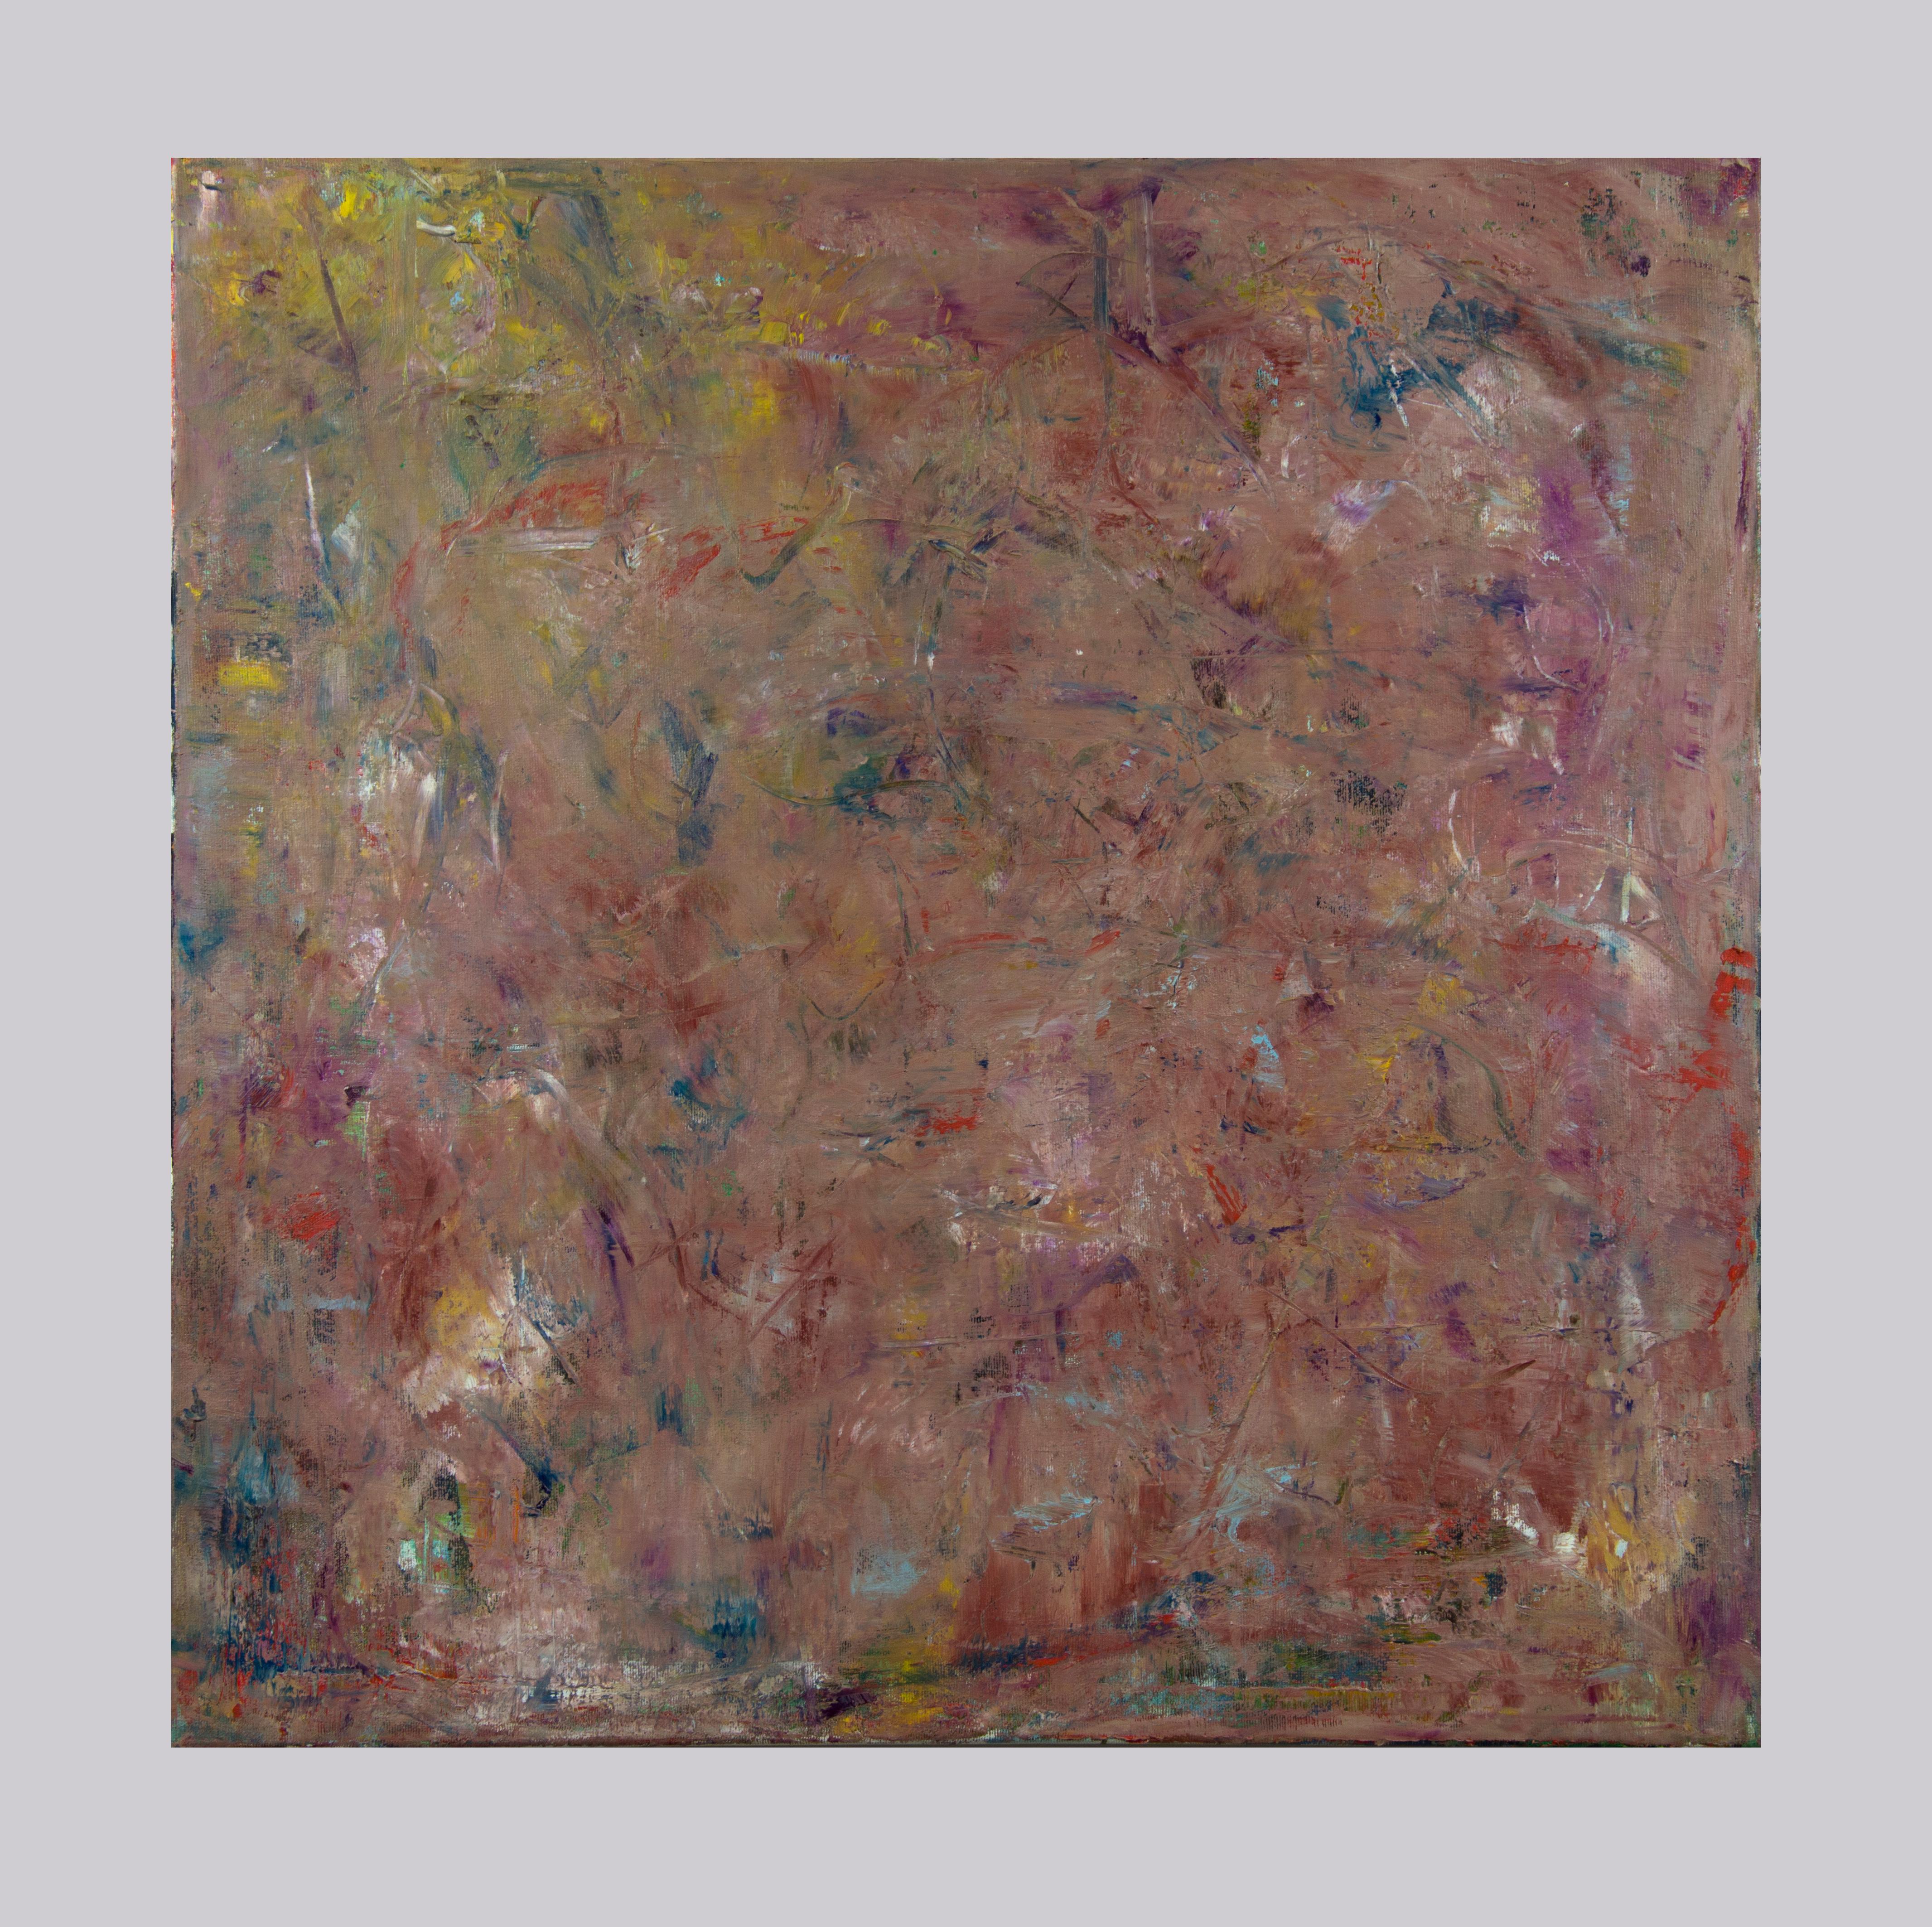 Composition arrhythmique 5 -  Peinture à l'huile abstraite expressionniste contemporaine